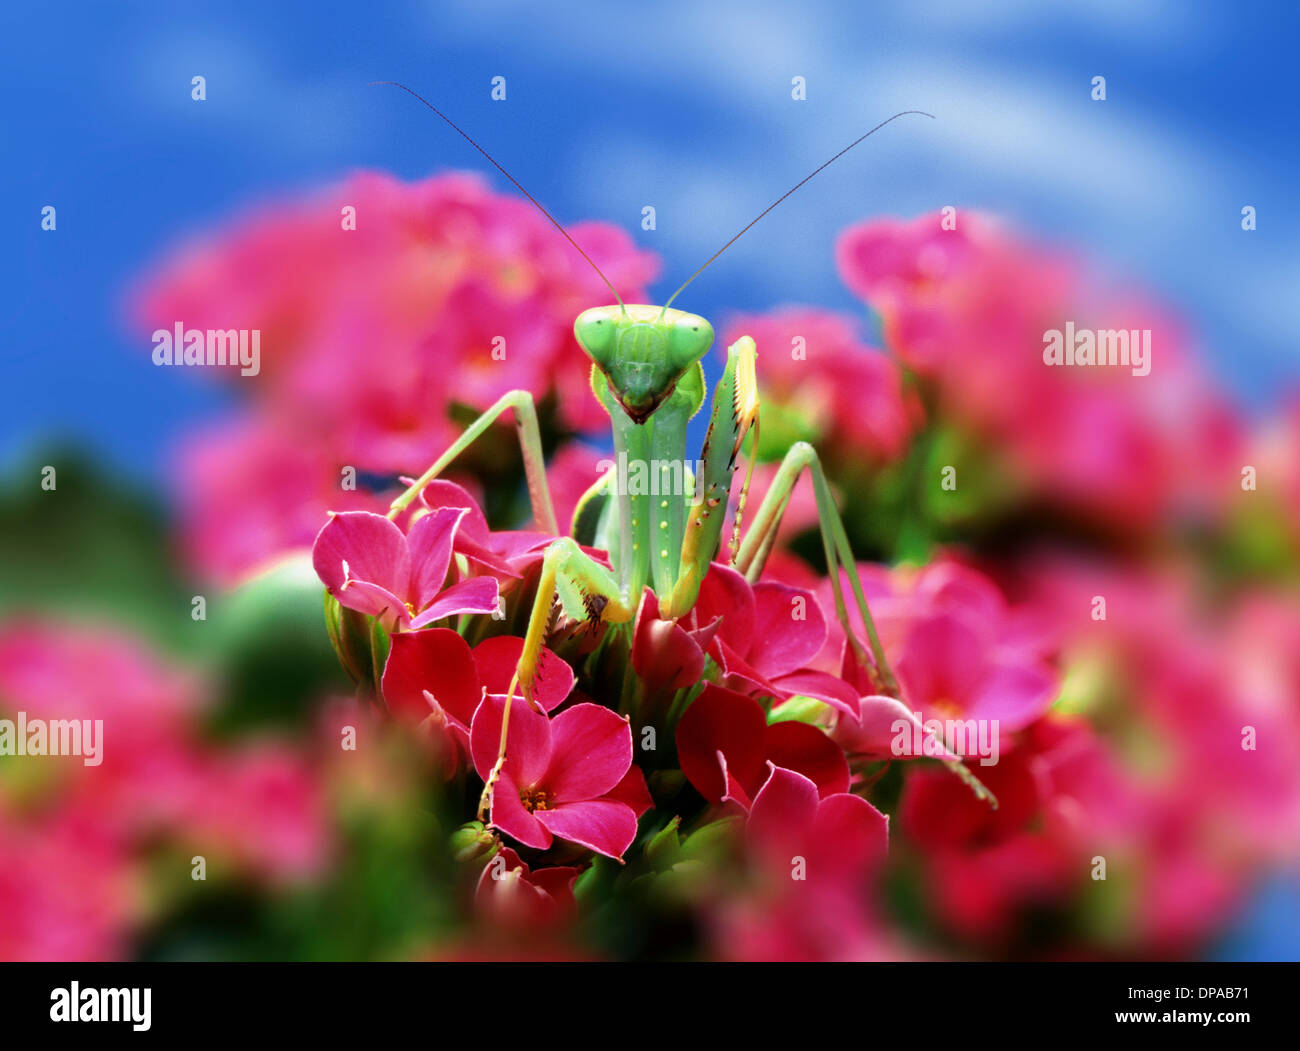 Praying Mantis on pink flower Stock Photo